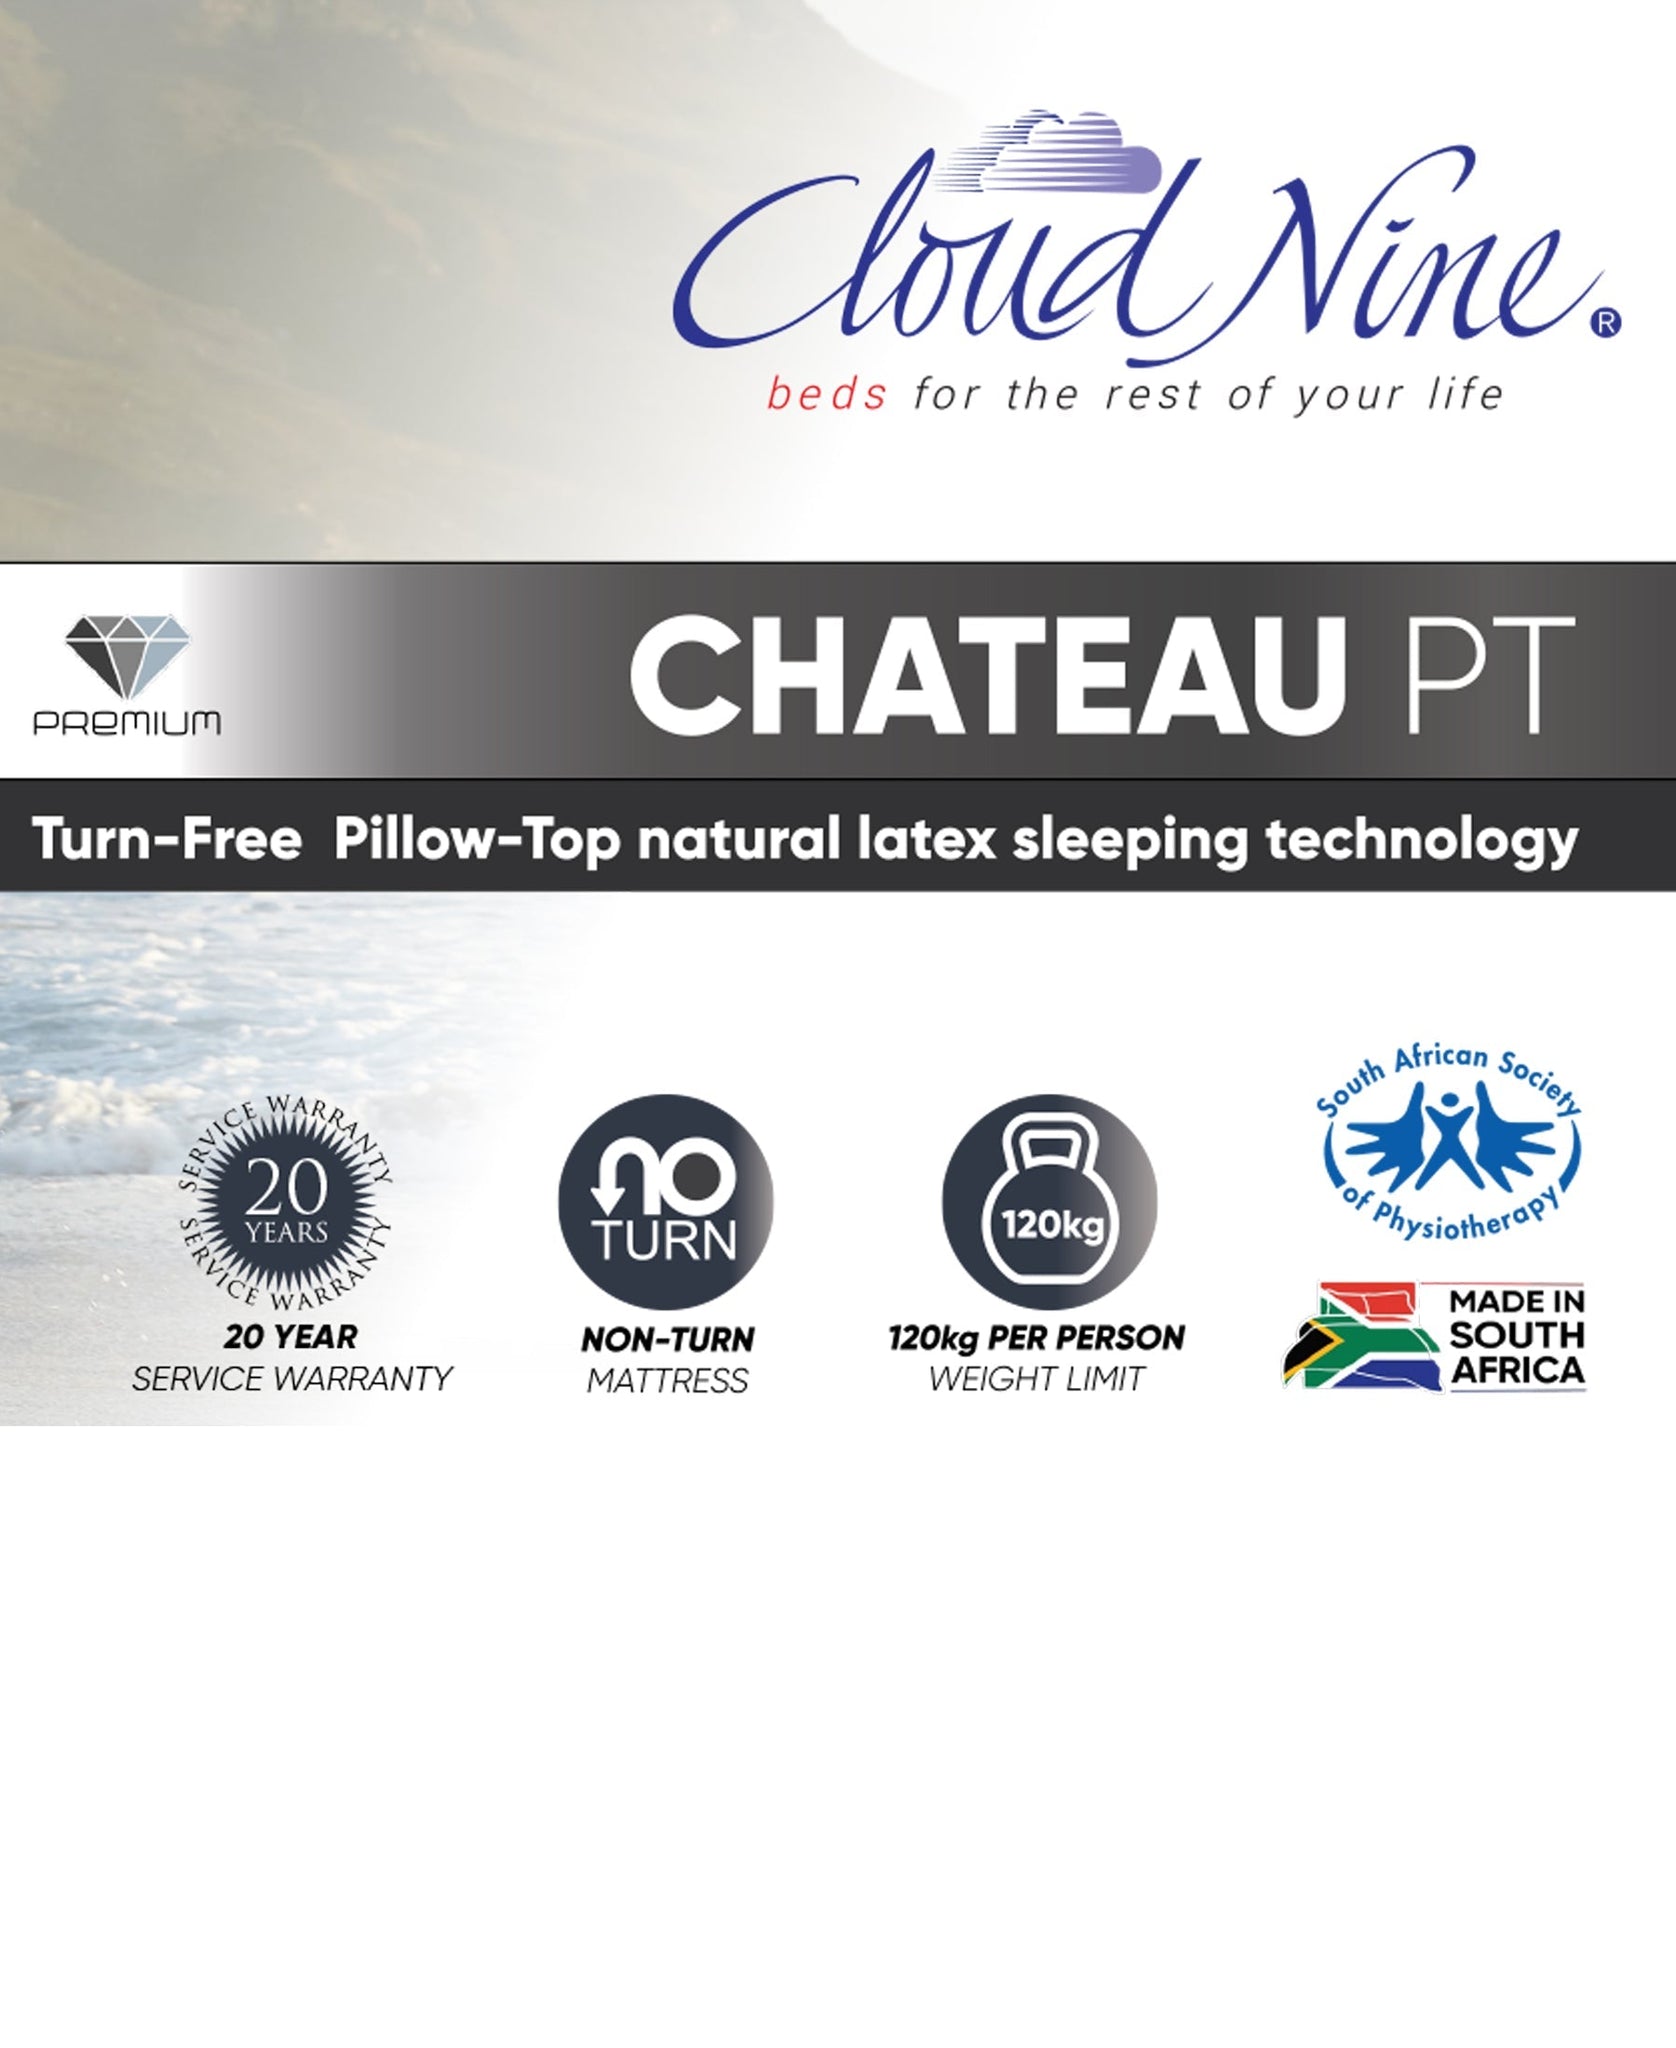 Cloud Nine Chateau PT Bed 3/4